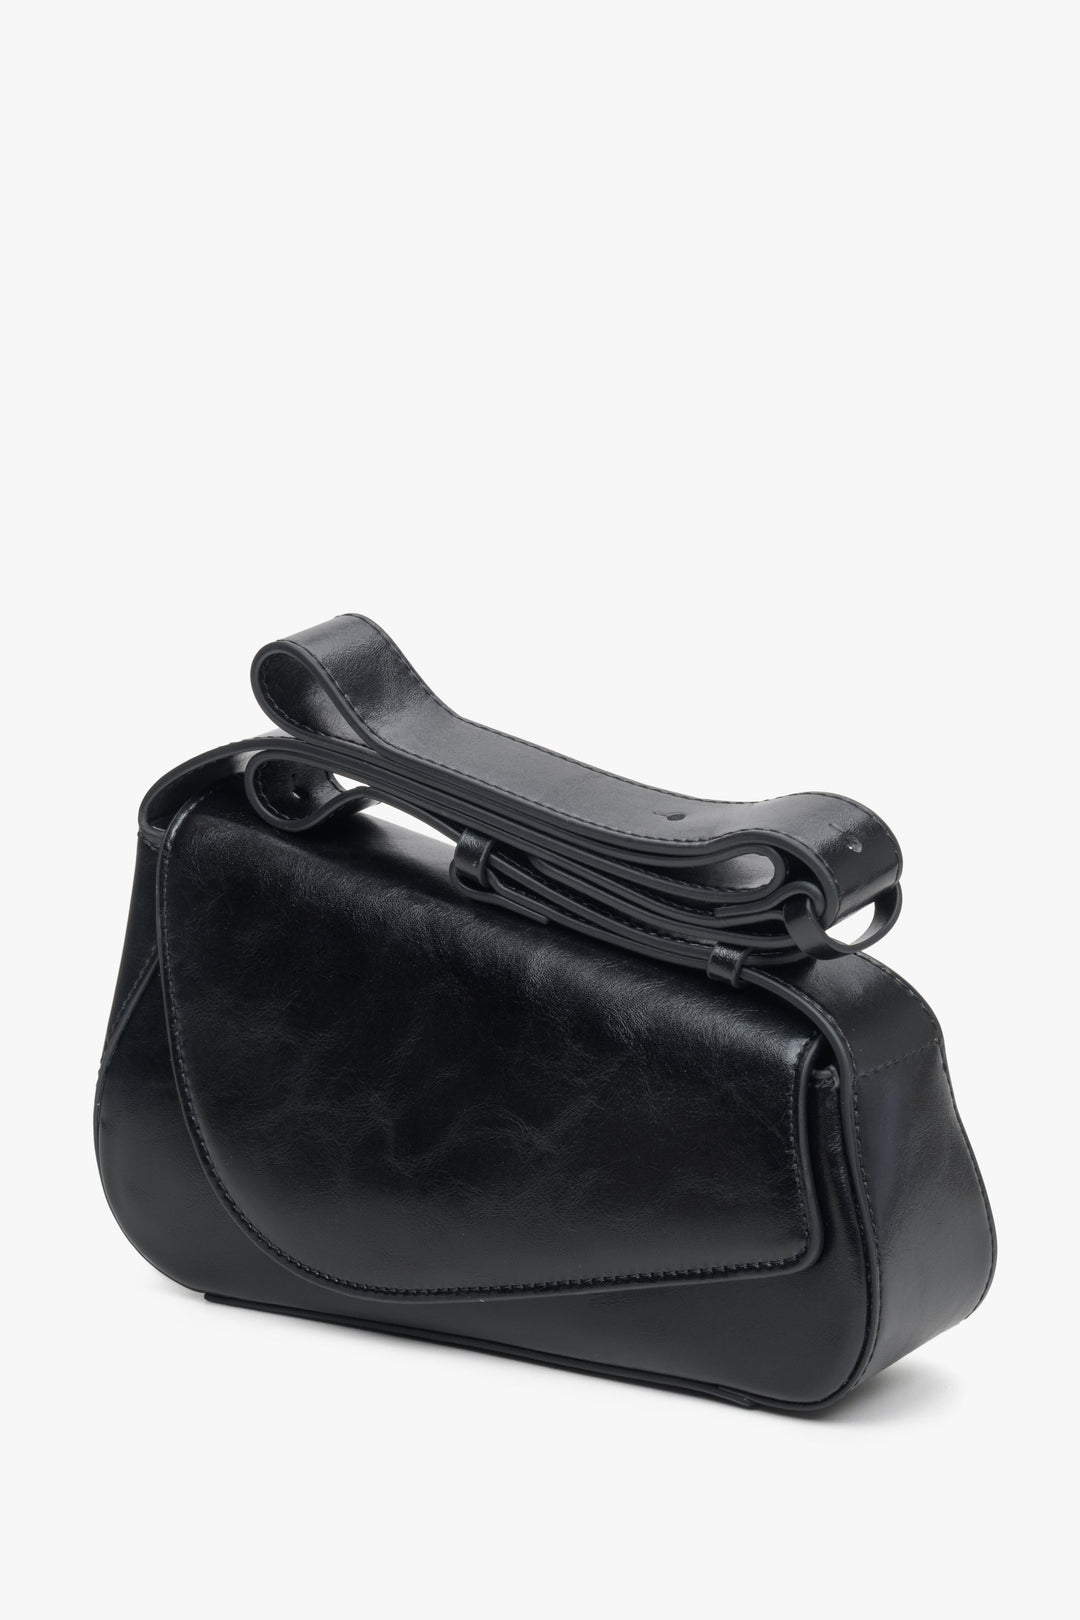 Estro's black leather women's baguette bag.